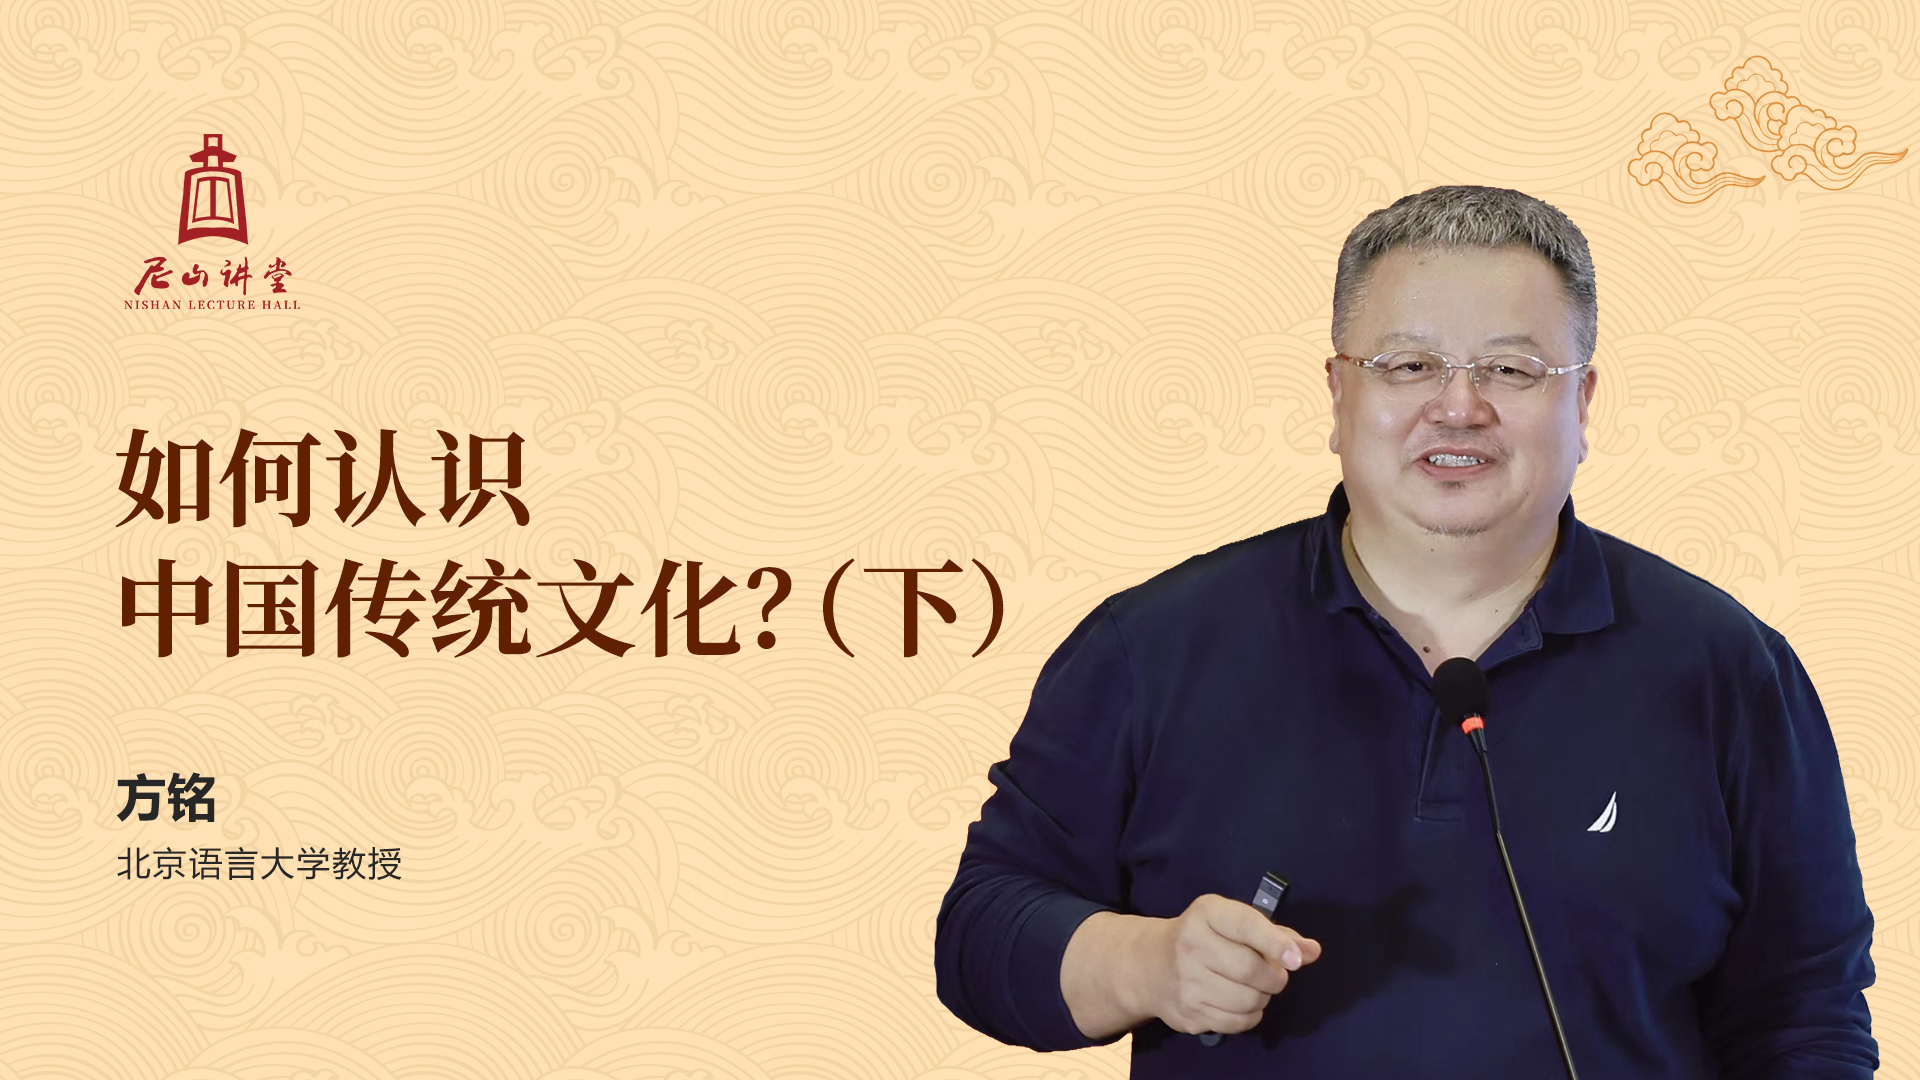 尼山讲堂|方铭:如何认识中国传统文化?(下)